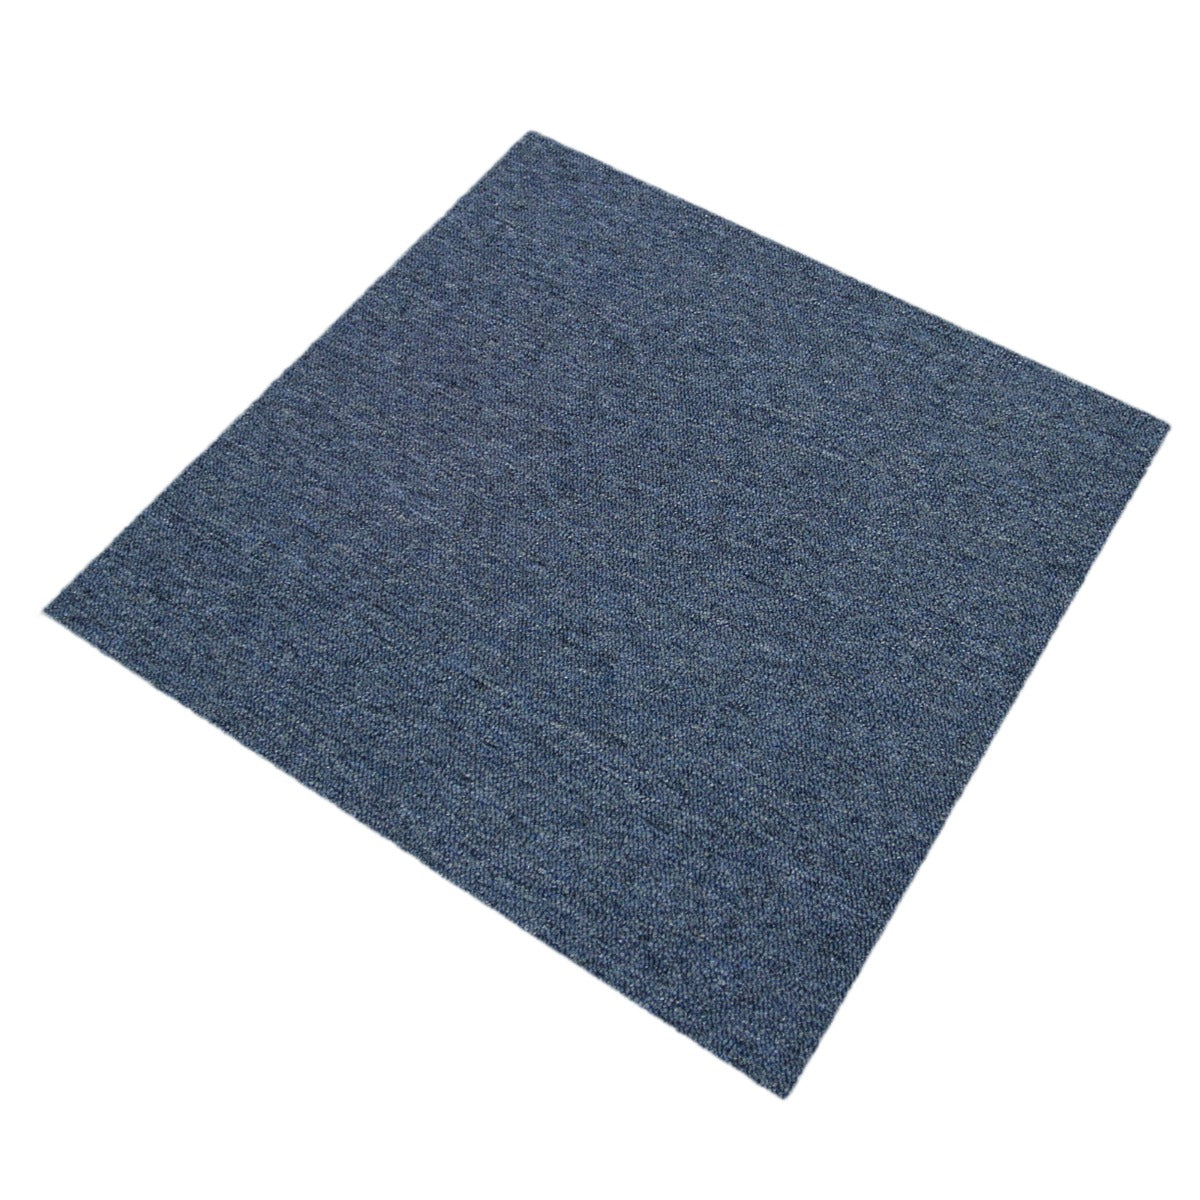 40 x Carpet Tiles 10m2 / Storm Blue & Charcoal Black - Used - Acceptable